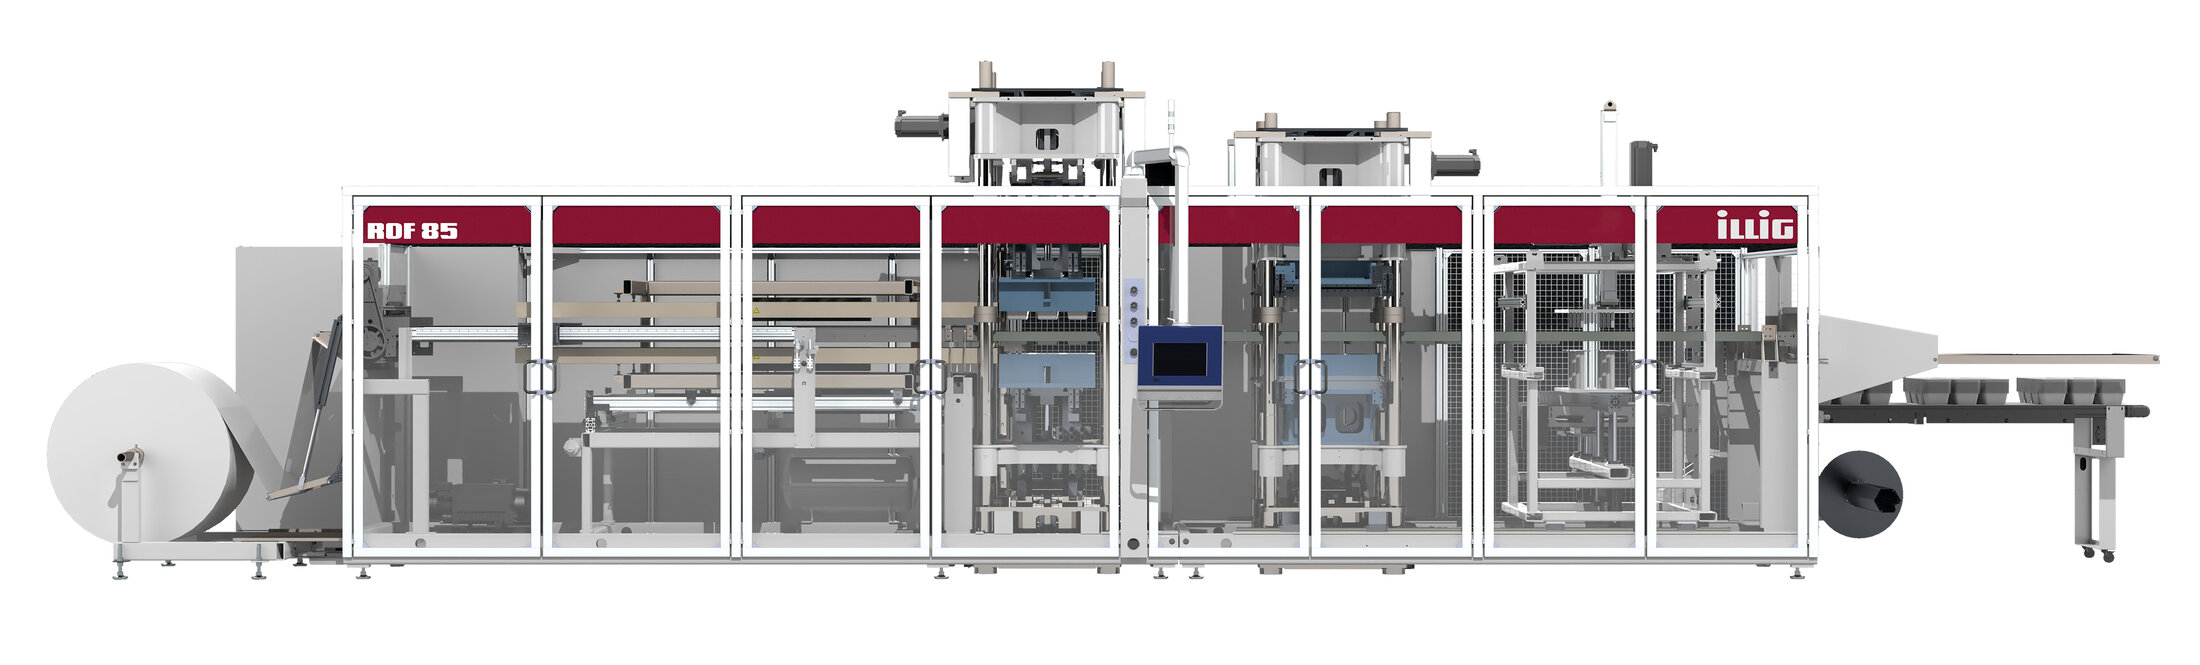 Neues ILLIG Thermoformsystem RedLine RDF 85, vorgestellt auf der Chinaplas 2021. | © ILLIG Maschinenbau GmbH